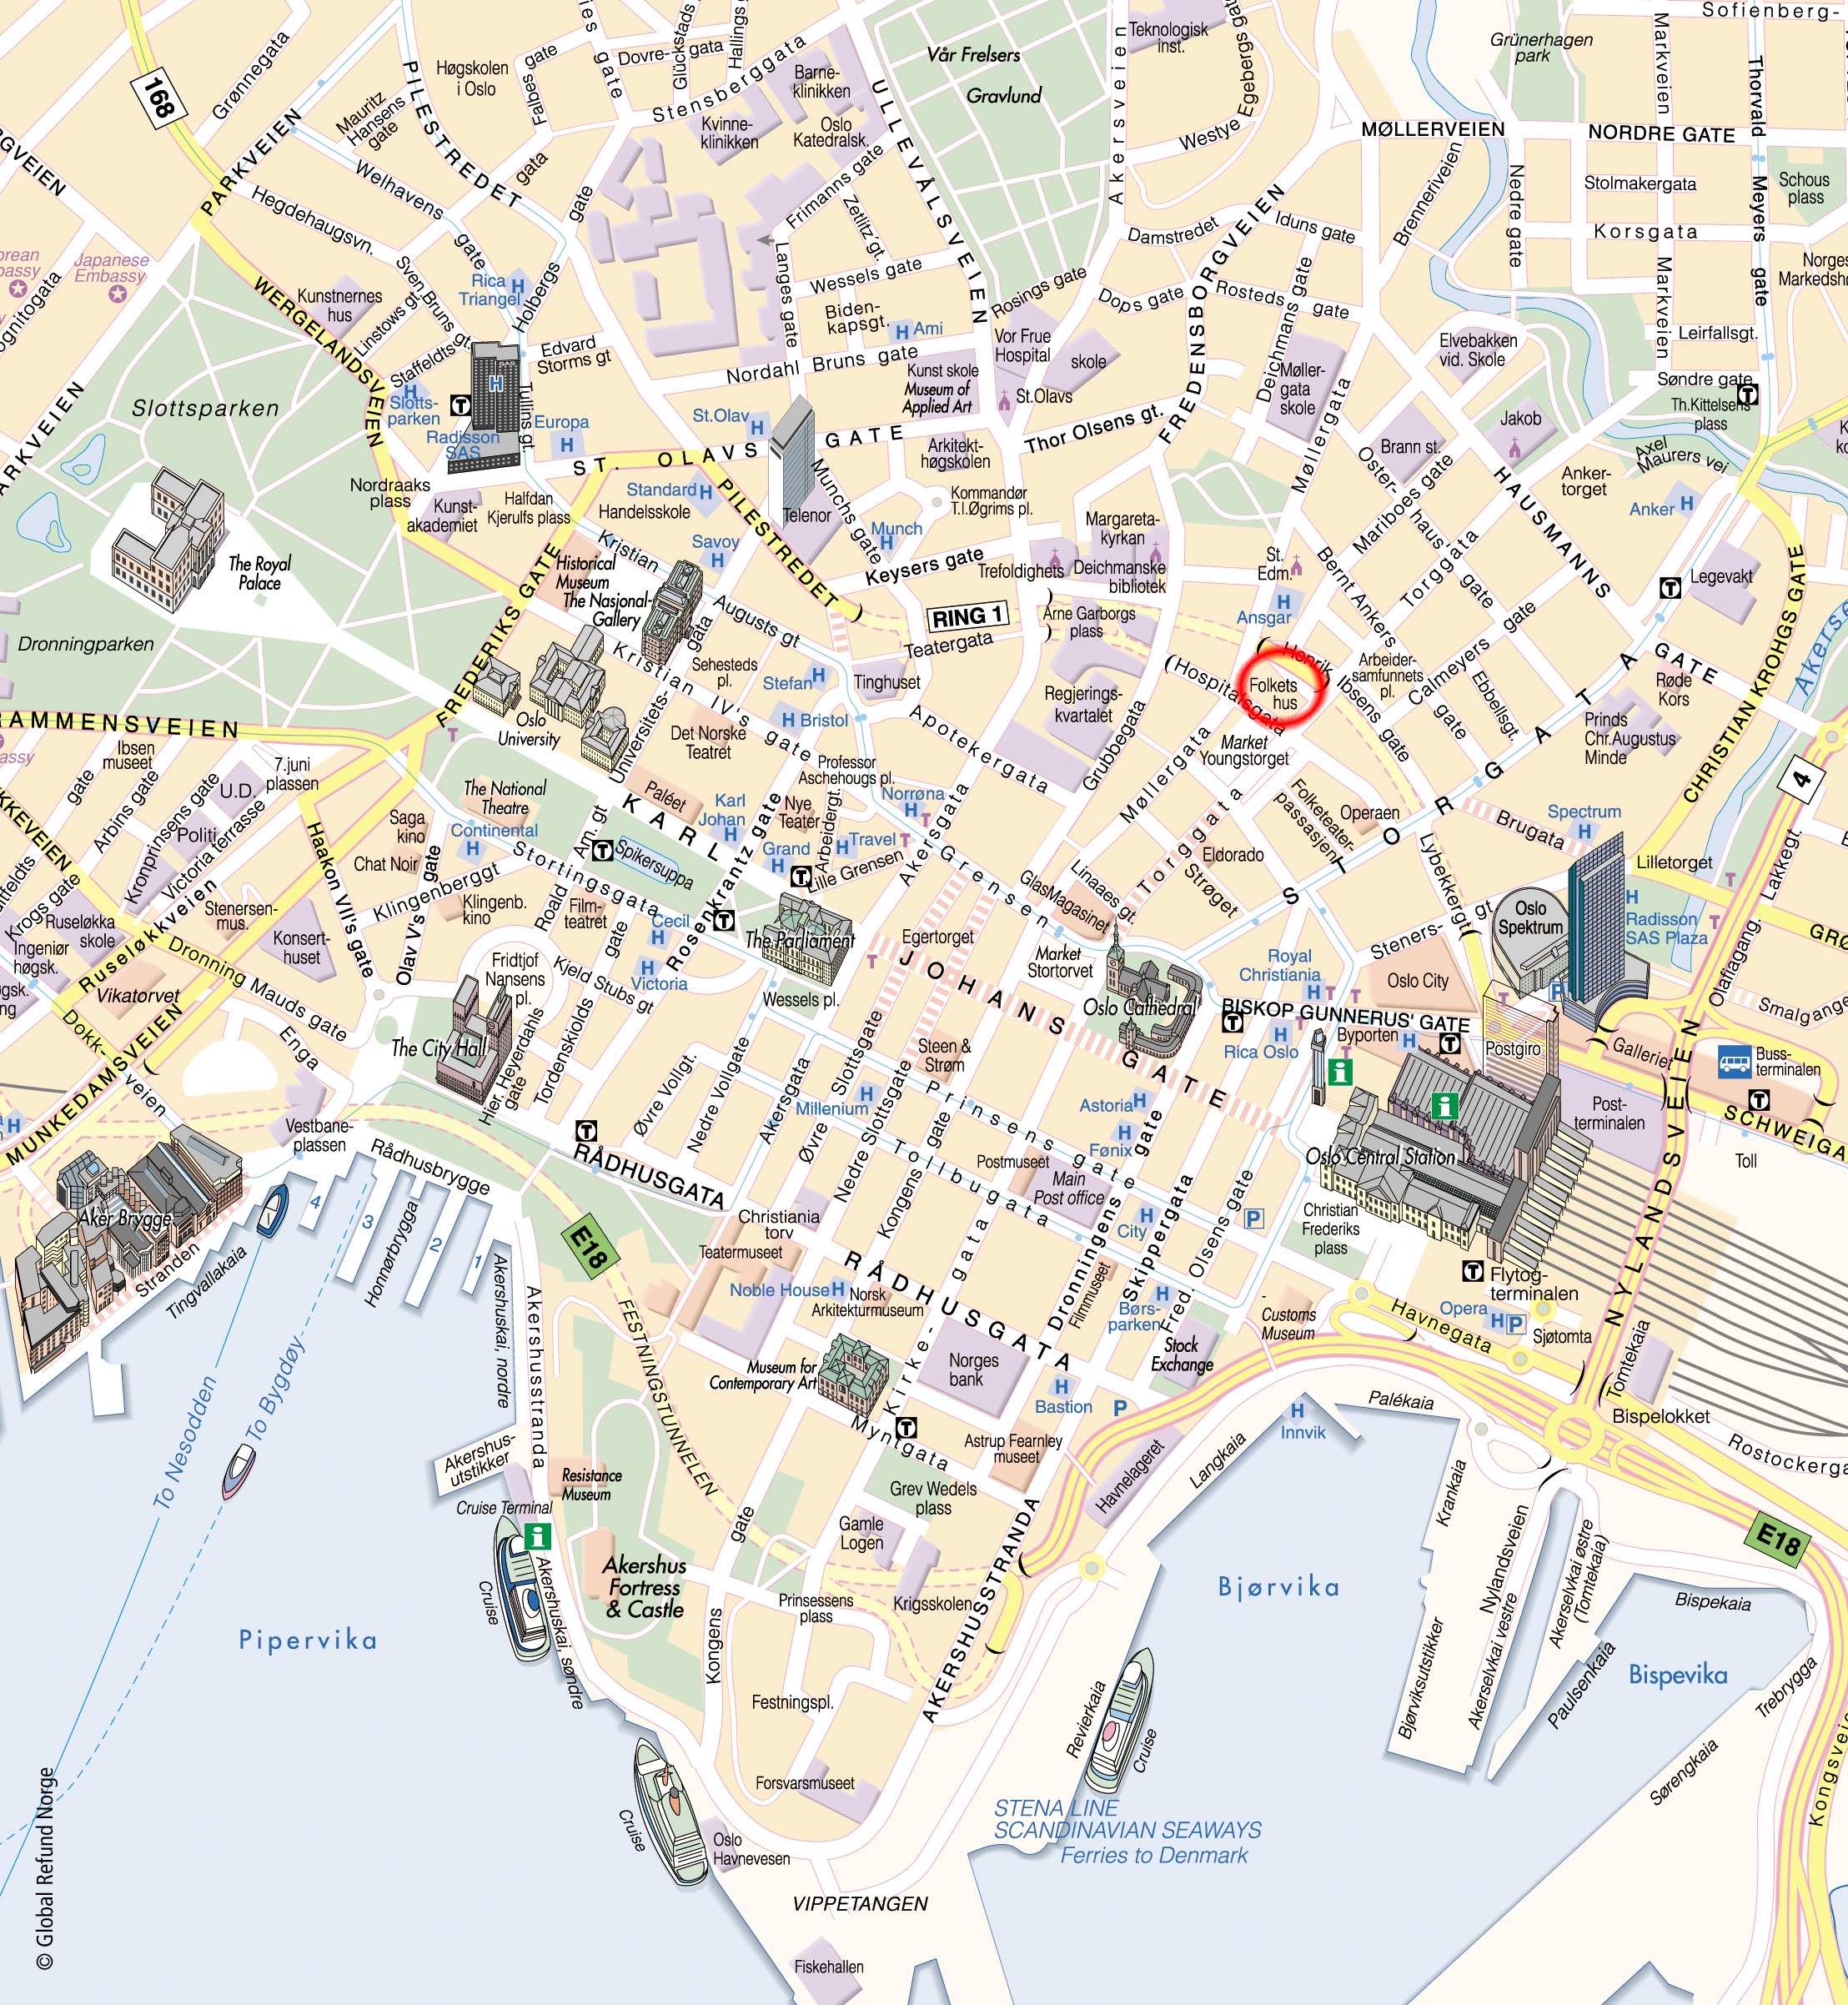 oslo tourism map